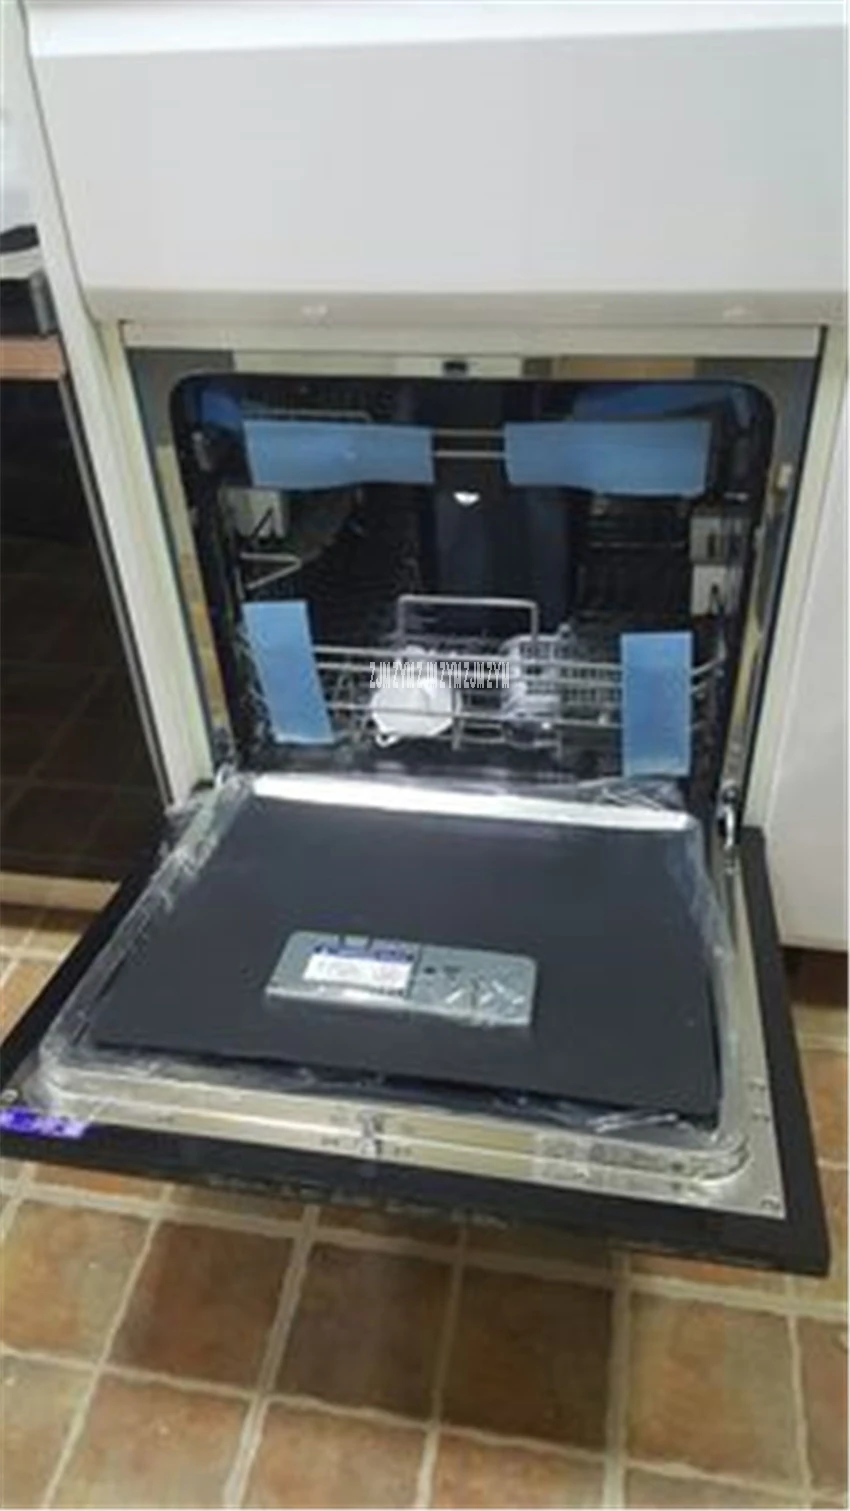 WQP8-W3908T-CN интеллектуальные WI-FI автоматический посудомоечная машина стерилизации сушки экономии энергии и воды Washdisher встроенный